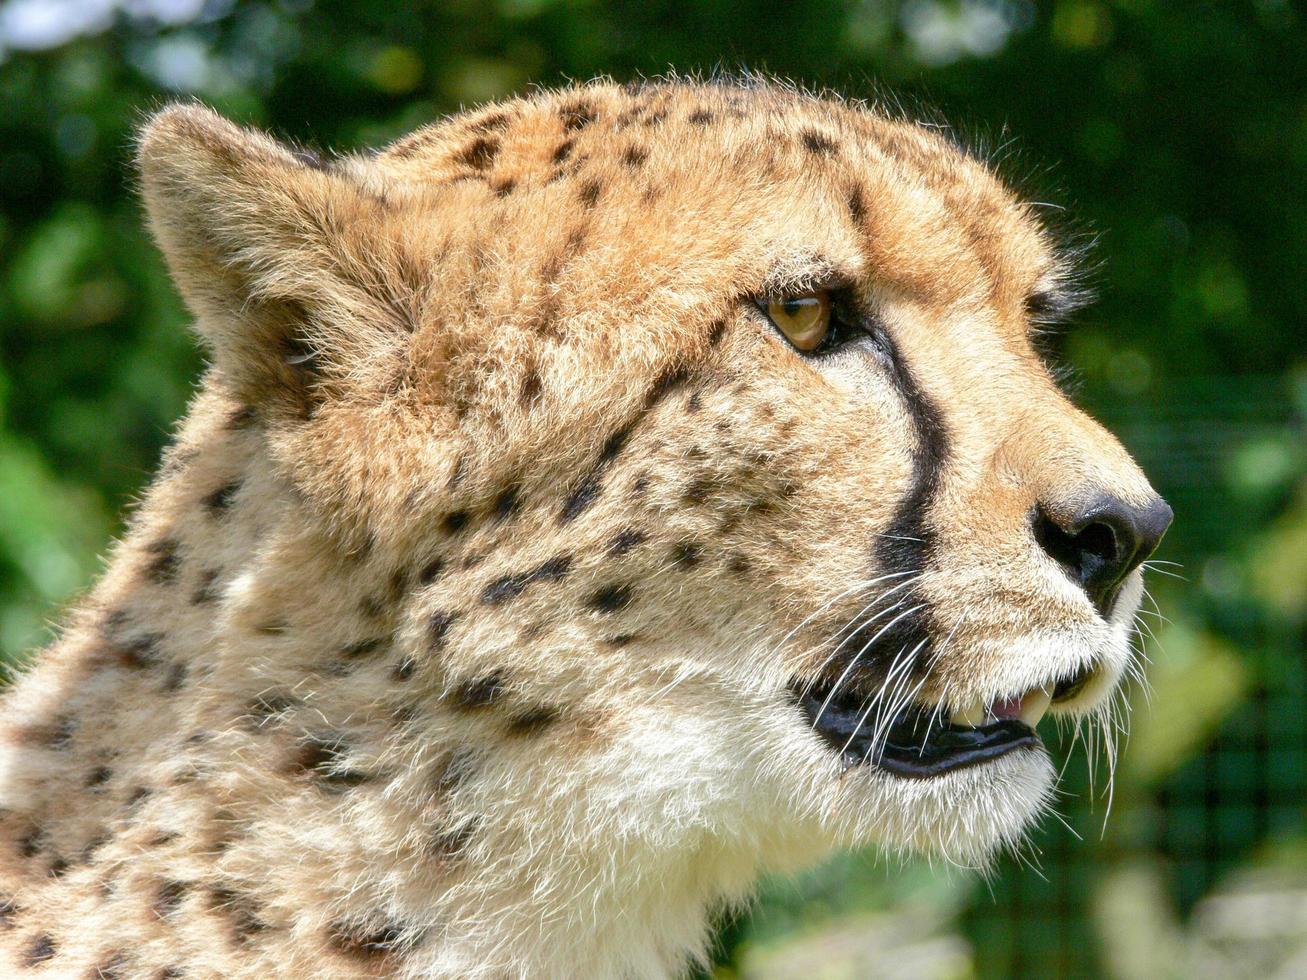 Cheetah in a zoo environment photo